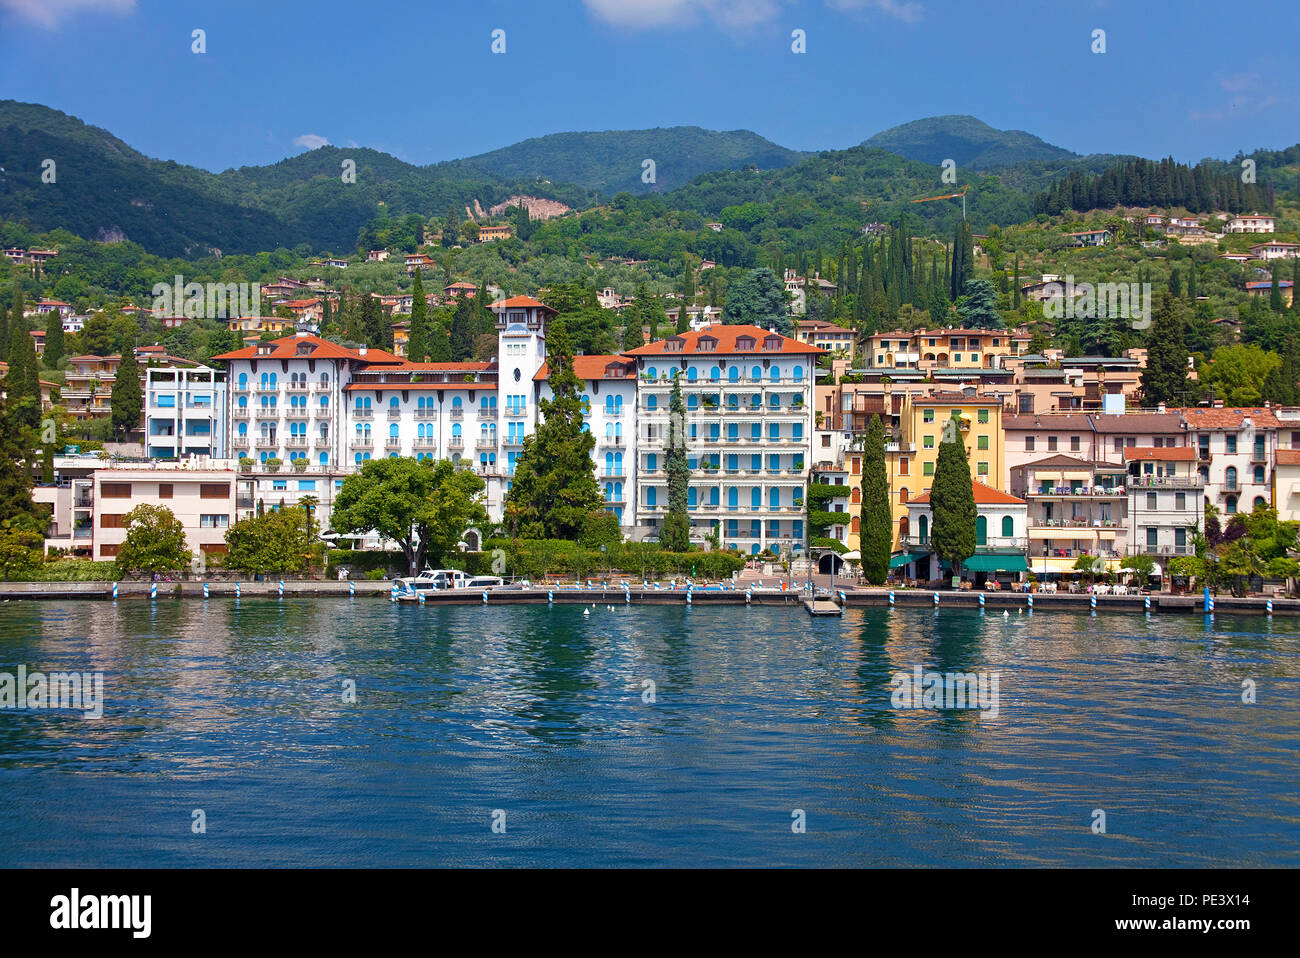 Savoy Palace hotel alla passeggiata a lago di Gardone Riviera sul lago di Garda, provincia di Verona, Italia Foto Stock